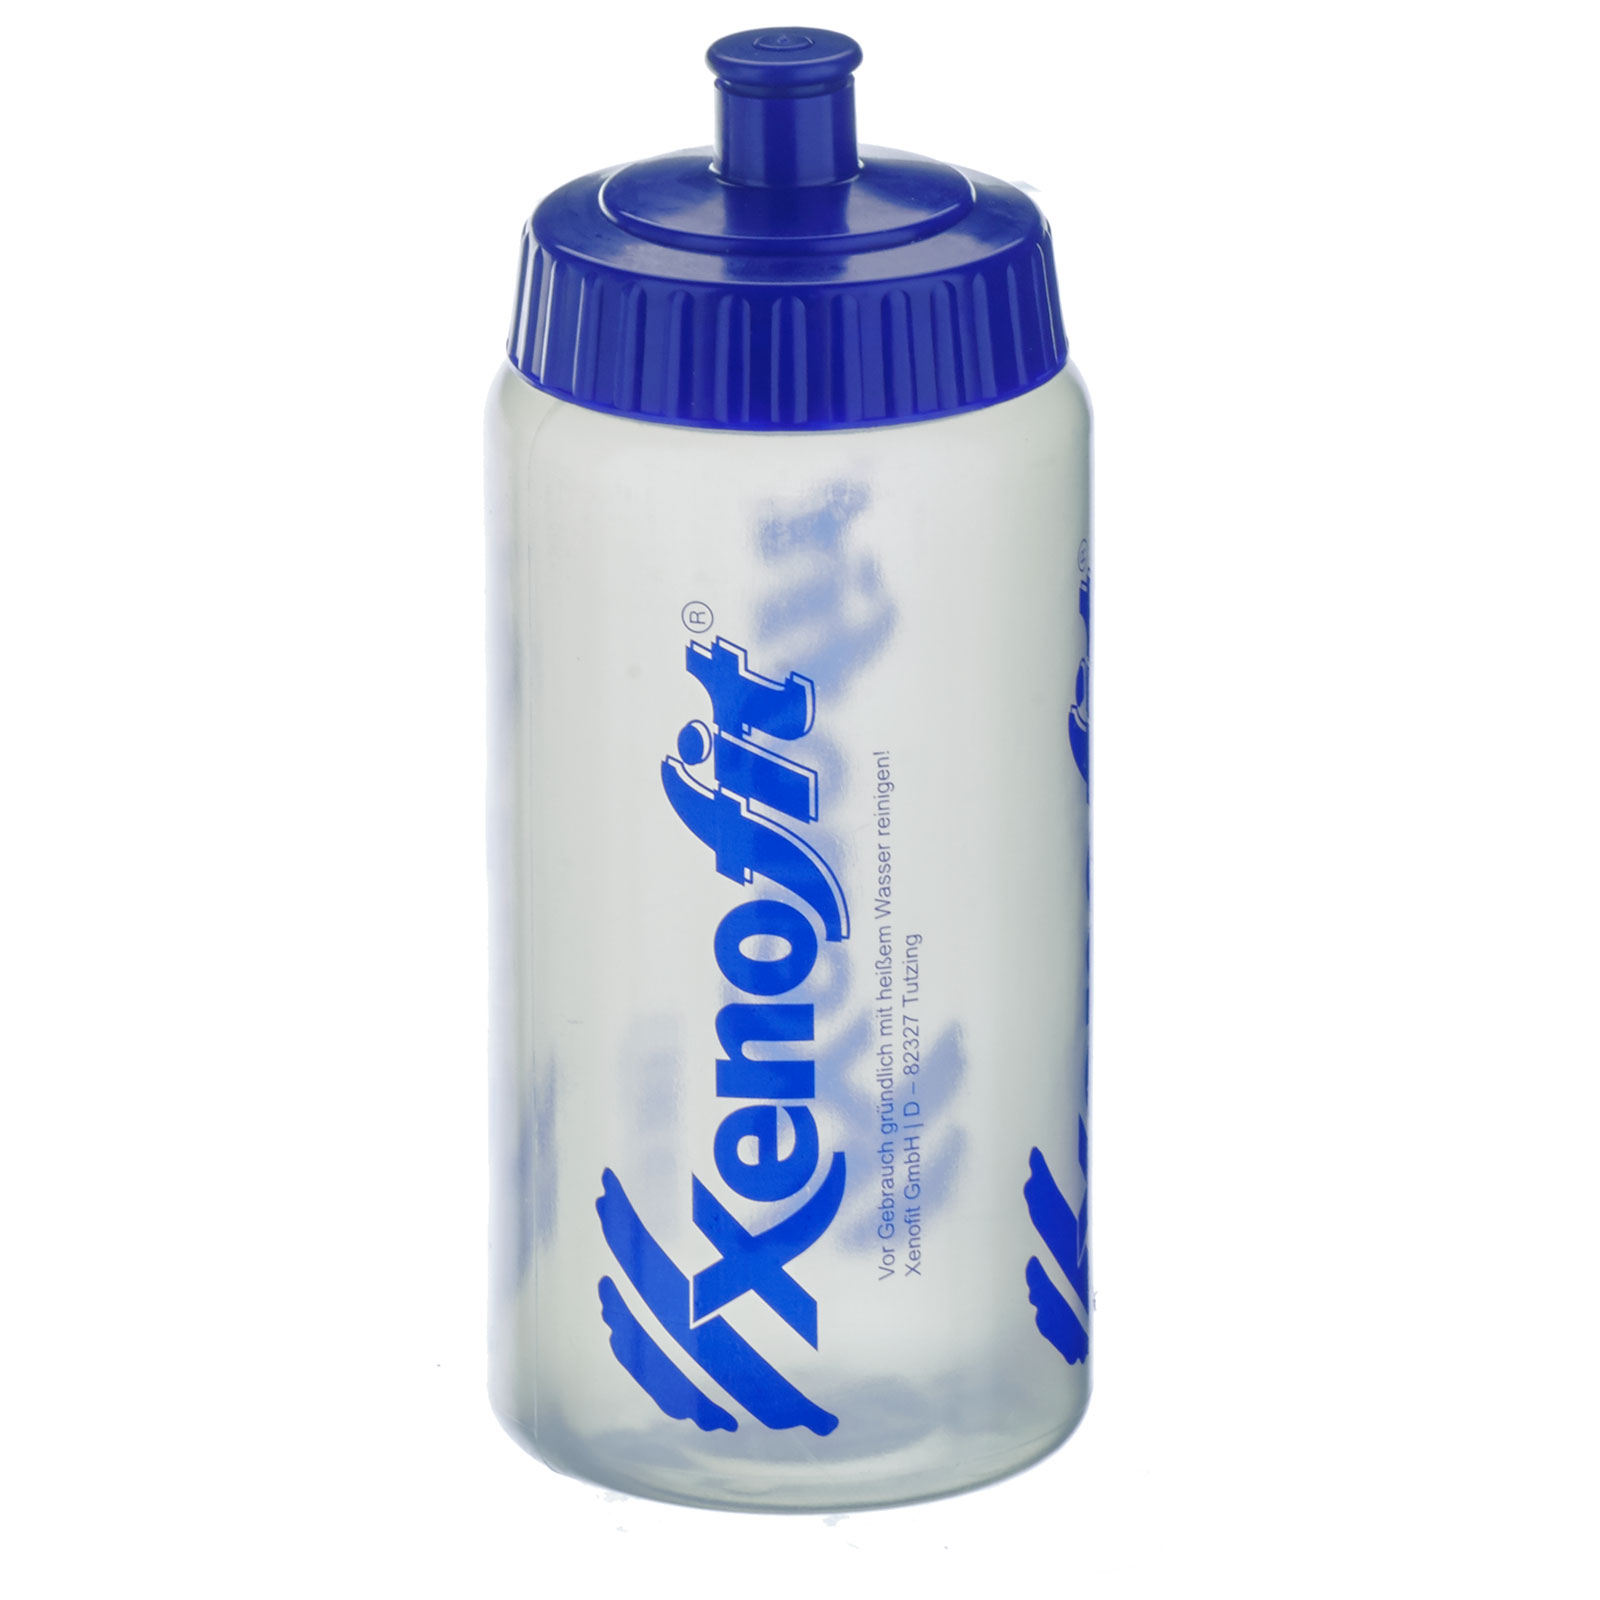 Productfoto van Xenofit Water Bottle 500ml